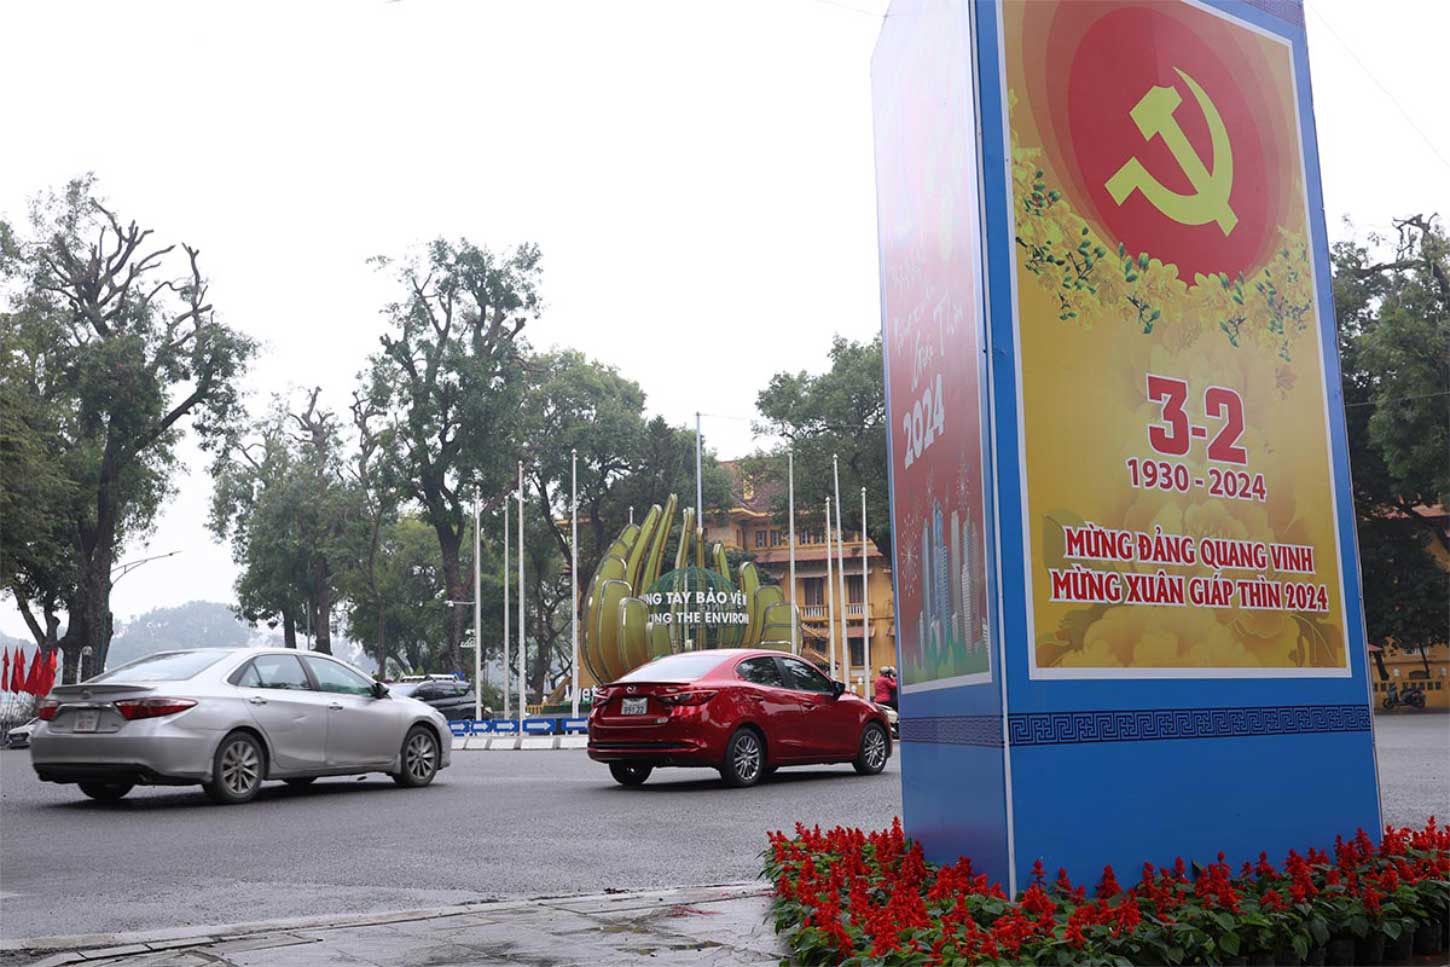 Các tuyến phố Hà Nội hiện đã được trang hoàng rực rỡ cờ hoa để hướng đến kỷ niệm 93 năm ngày thành lập Đảng (3.2.1930 - 3.2.2023). Ảnh: Hải Nguyễn